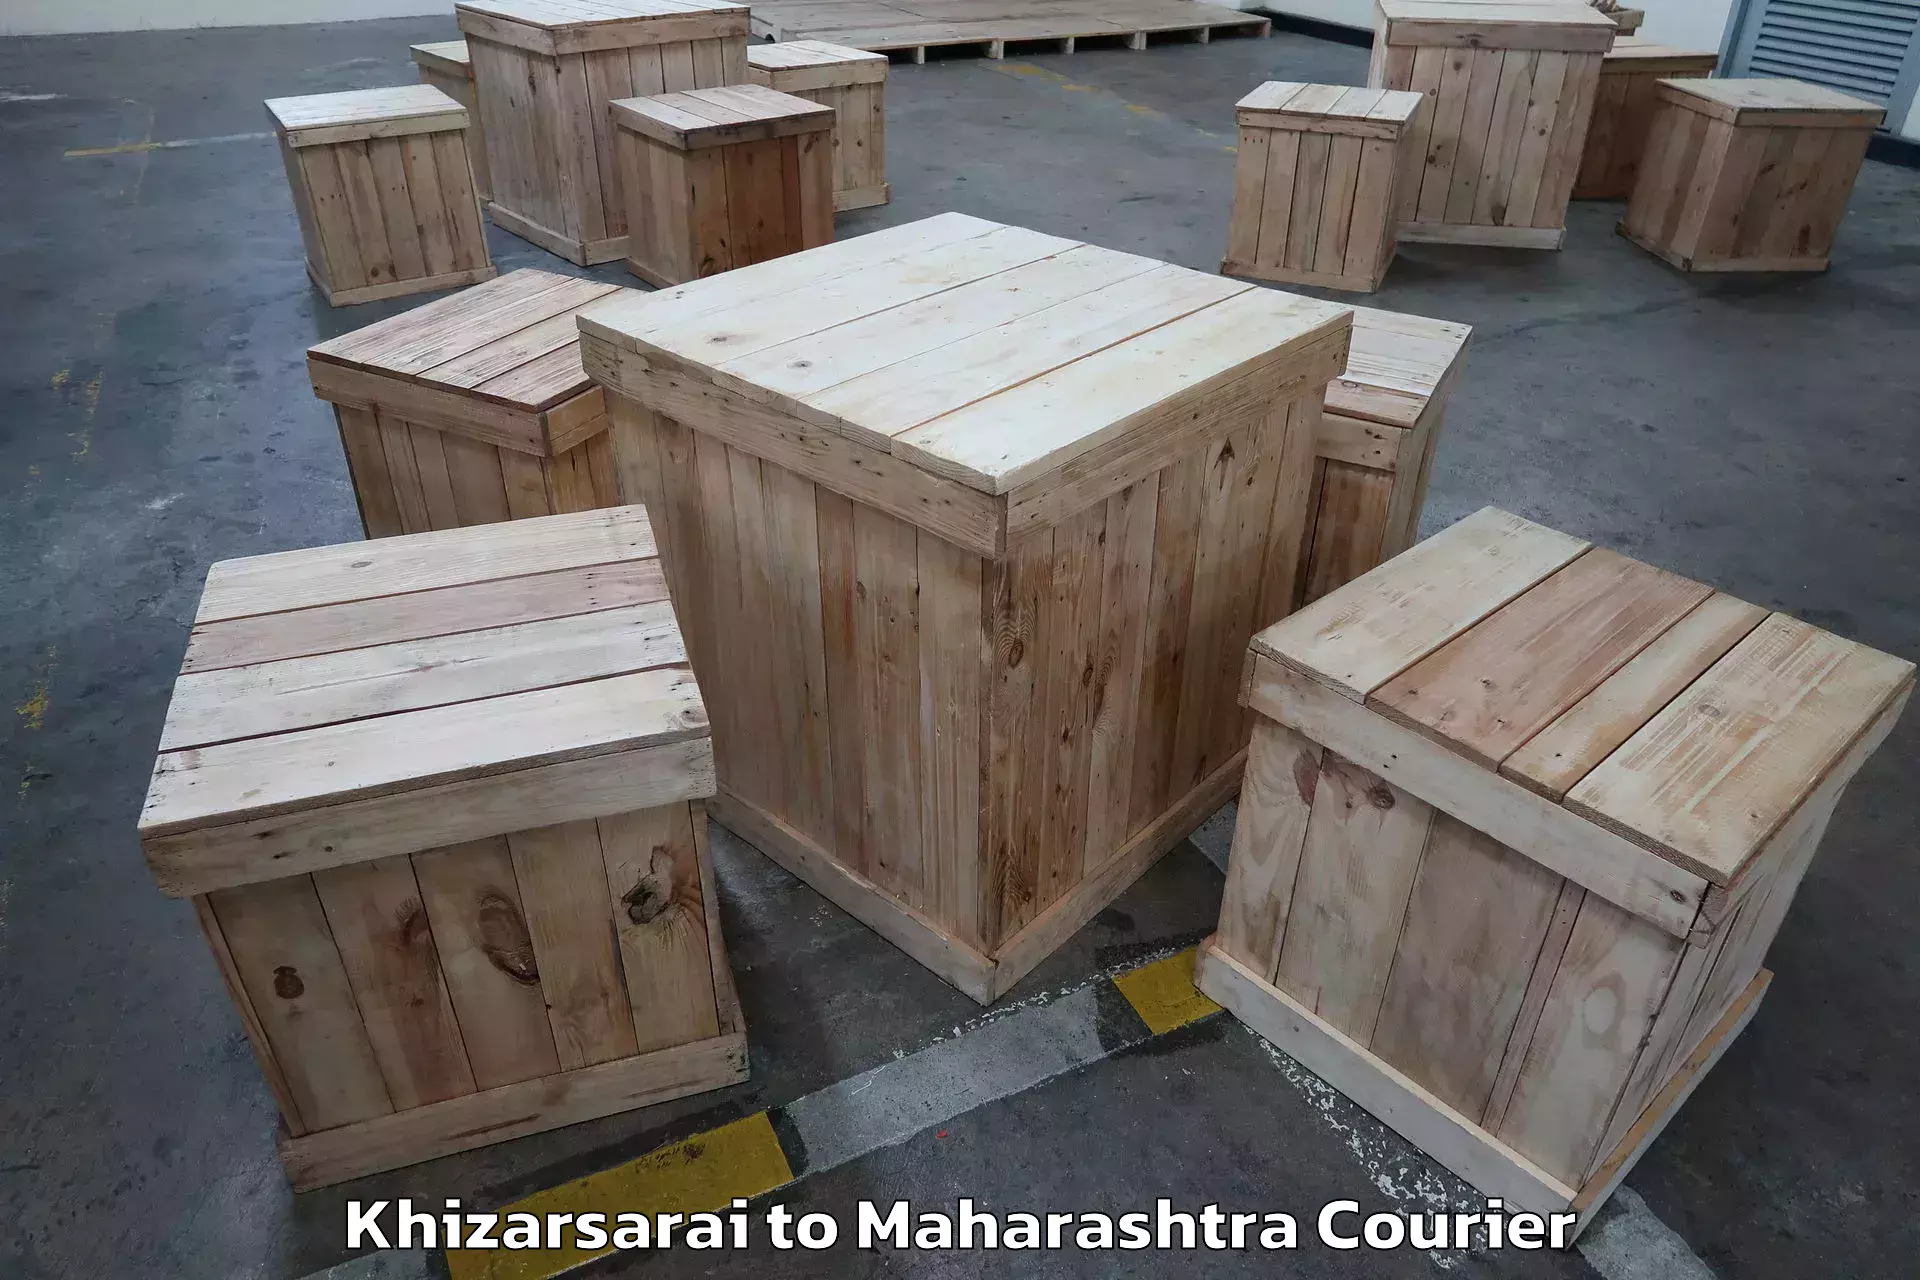 Professional moving company Khizarsarai to Loha Nanded